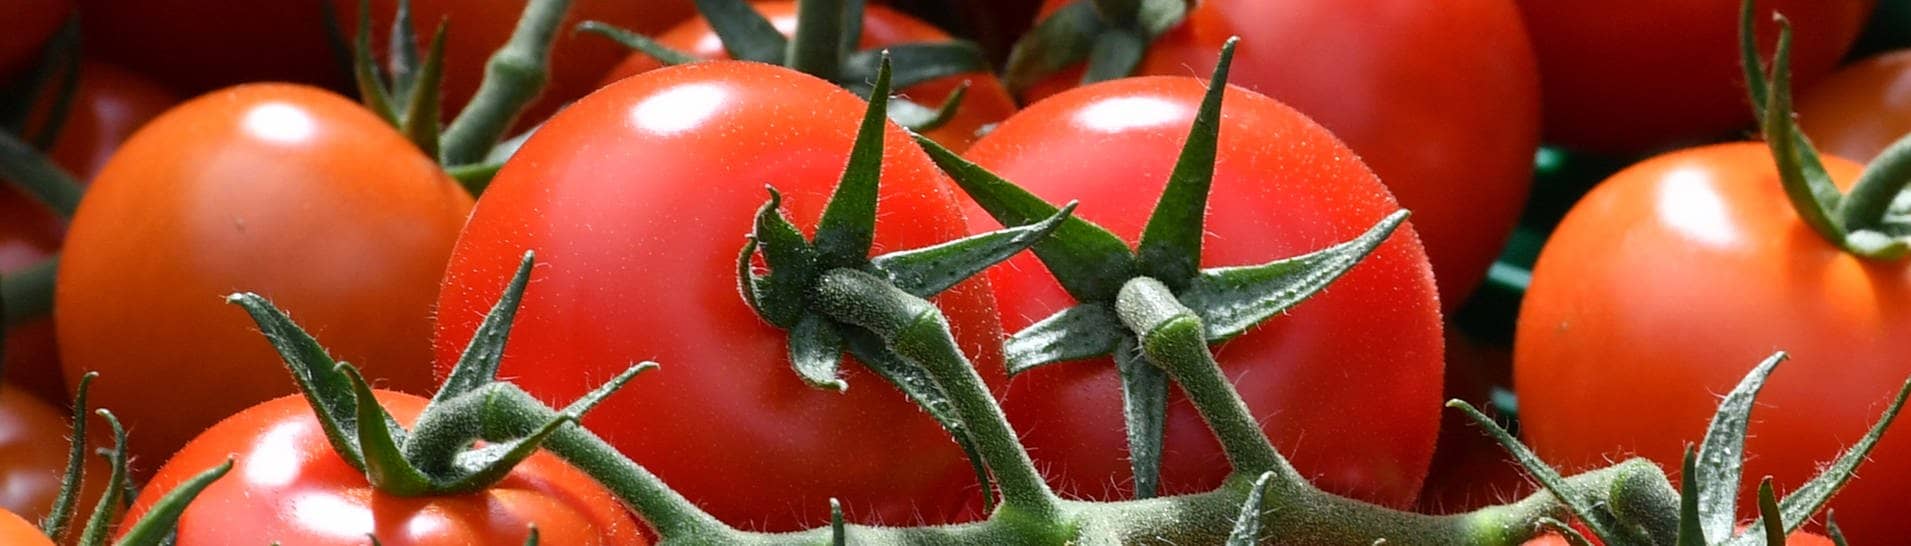 Tomaten in eine Gewächshaus – Eine Tomate auf der ISS war plötzlich einfach verschwunden. Daraufhin wurde Astronaut Frank Rubio verdächtigt, dass er sie heimlich gegessen hat. Jetzt ist sie wieder aufgetaucht. (Foto: dpa Bildfunk, picture alliance / dpa | Martin Schutt)